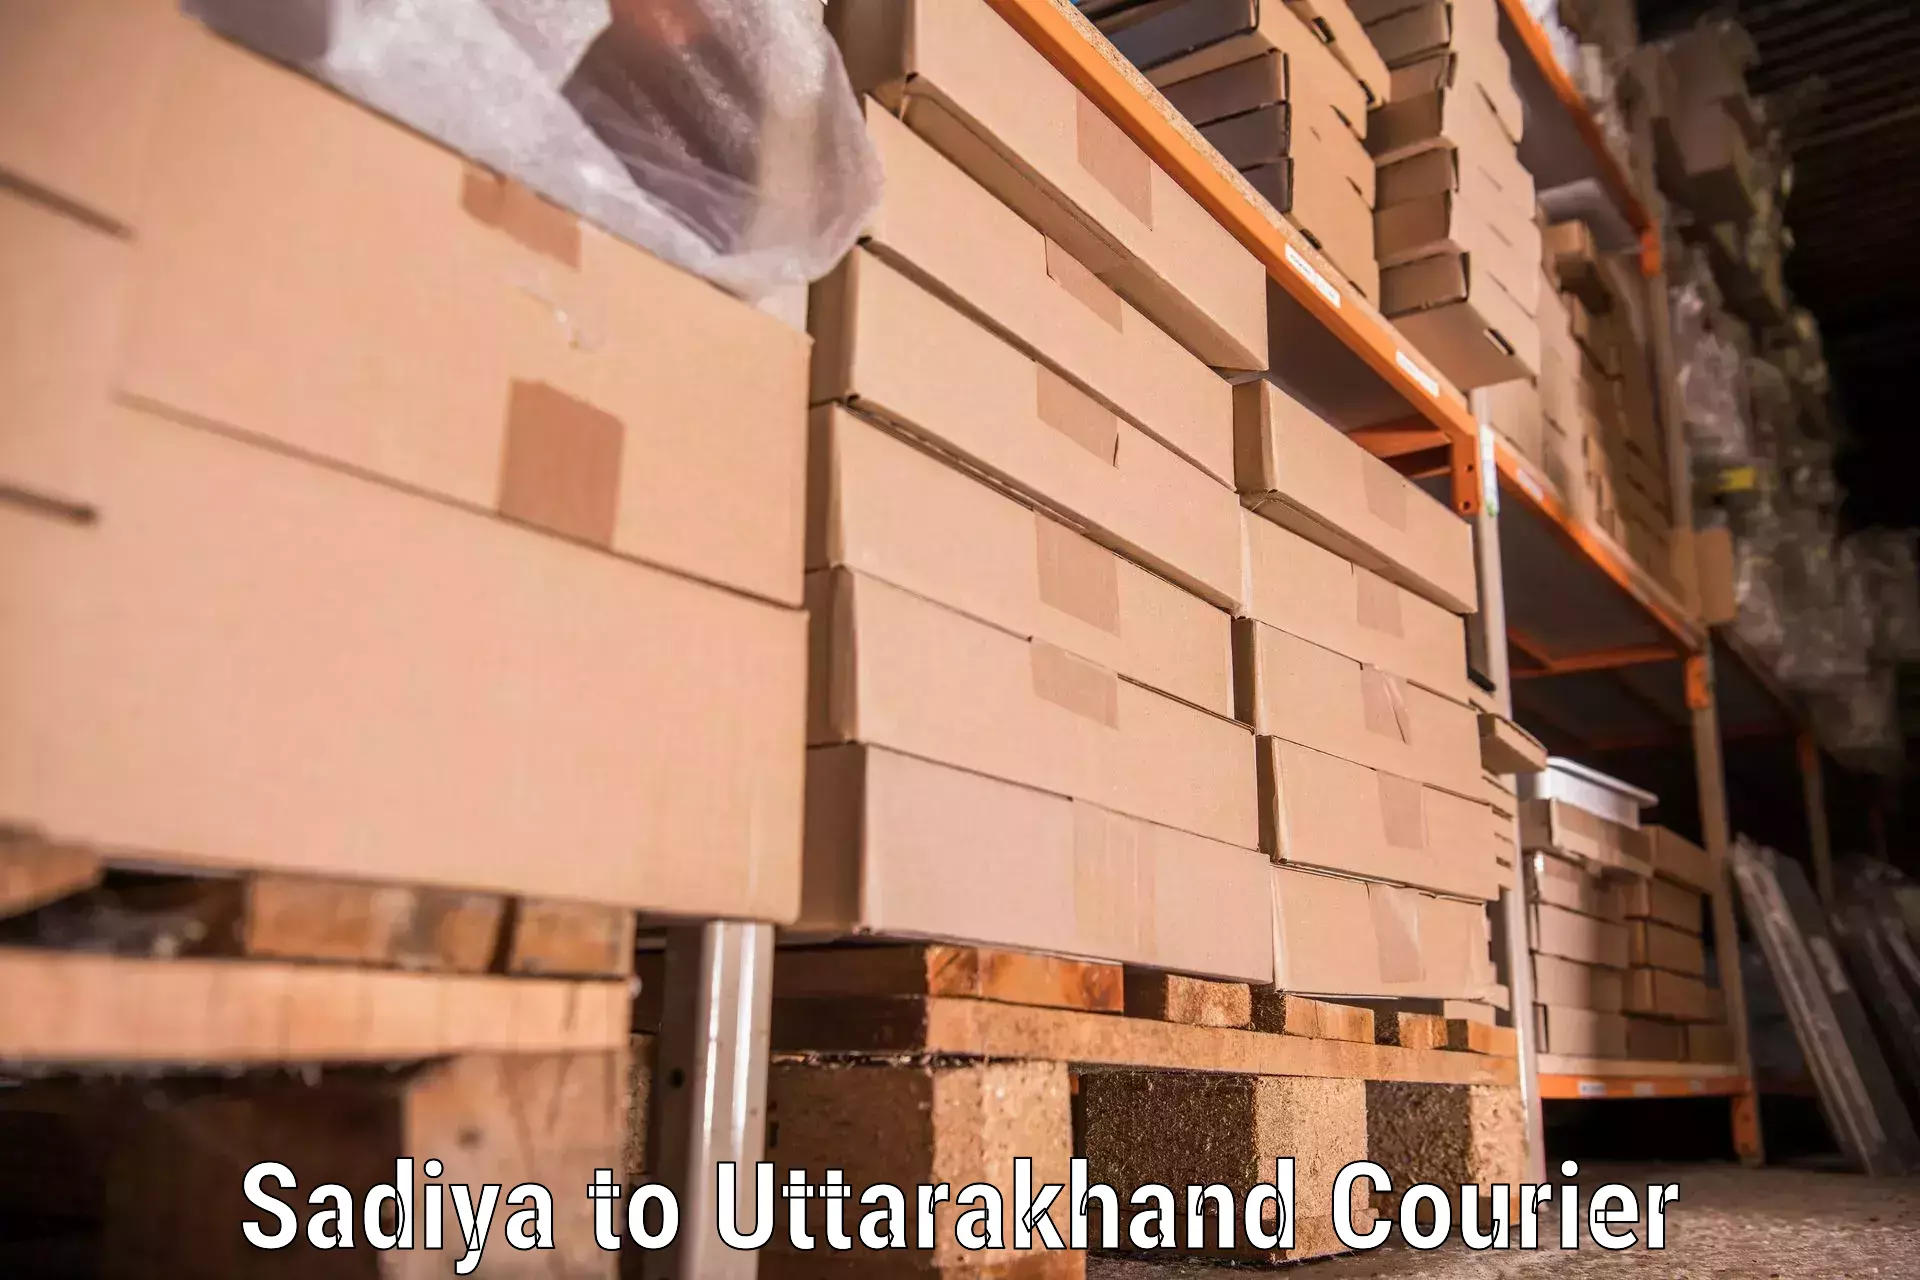 Furniture delivery service Sadiya to Pithoragarh